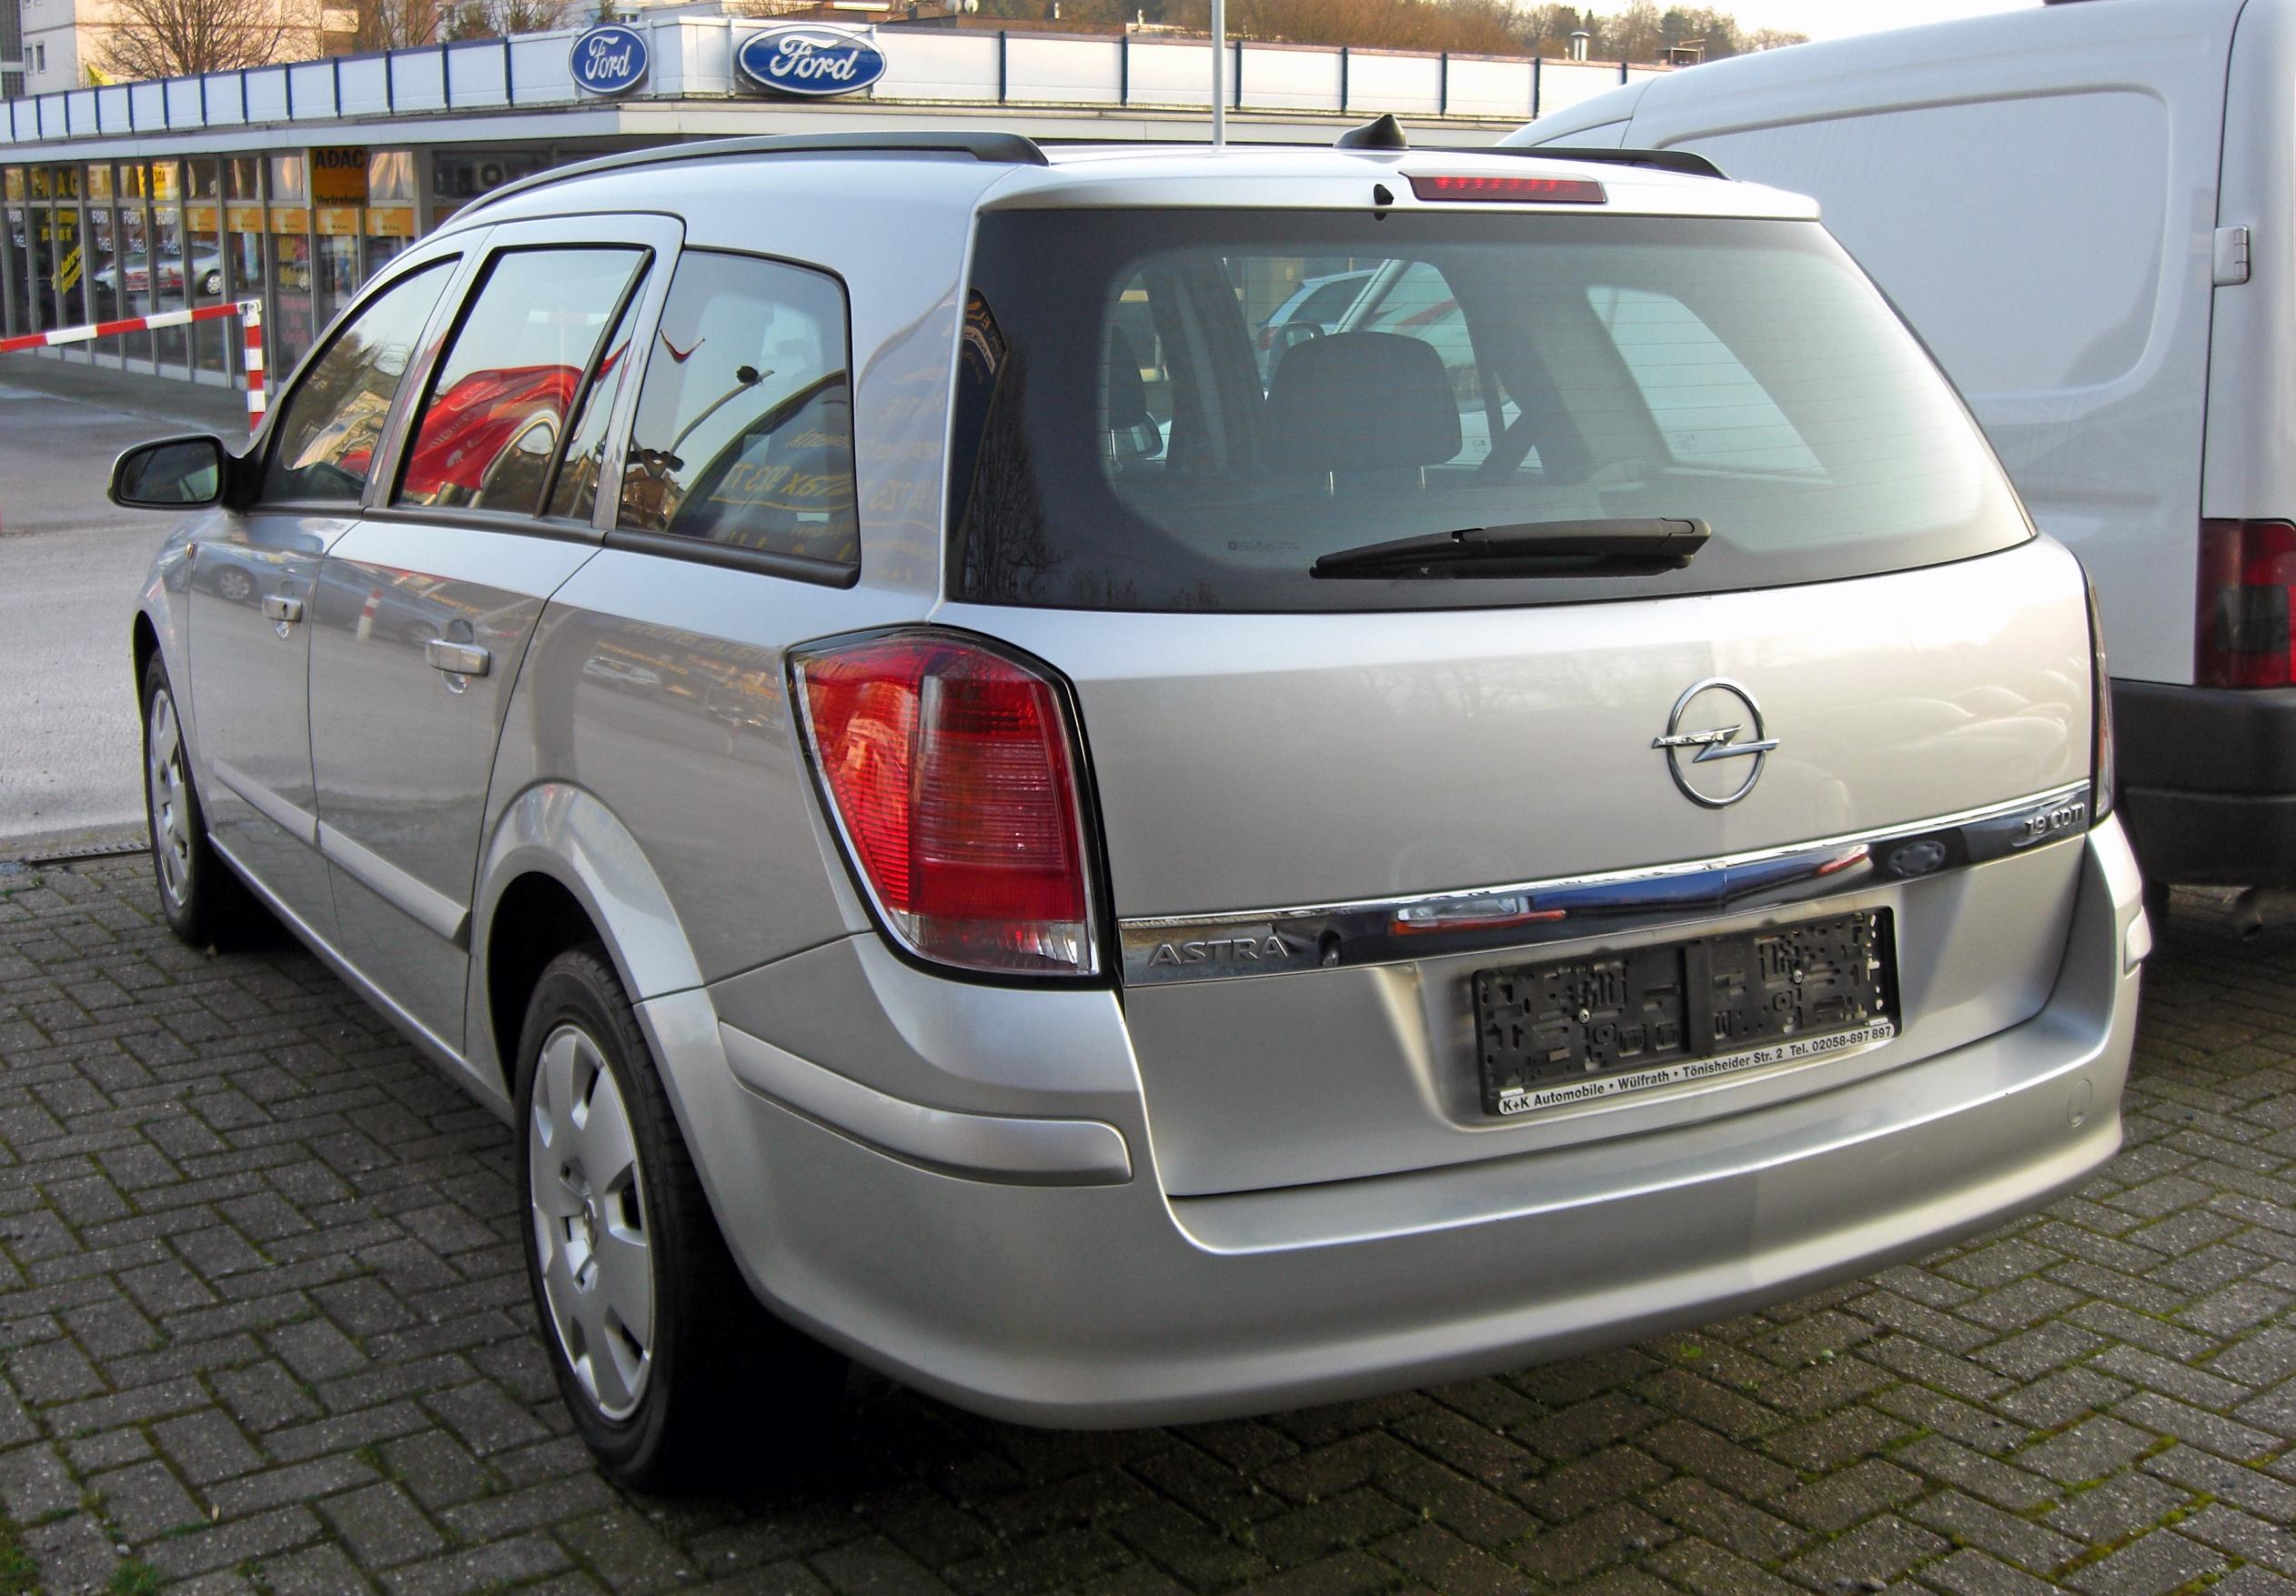 Джи караван. Opel Astra h 2009 универсал. Opel Astra Caravan. Opel Astra h Caravan.